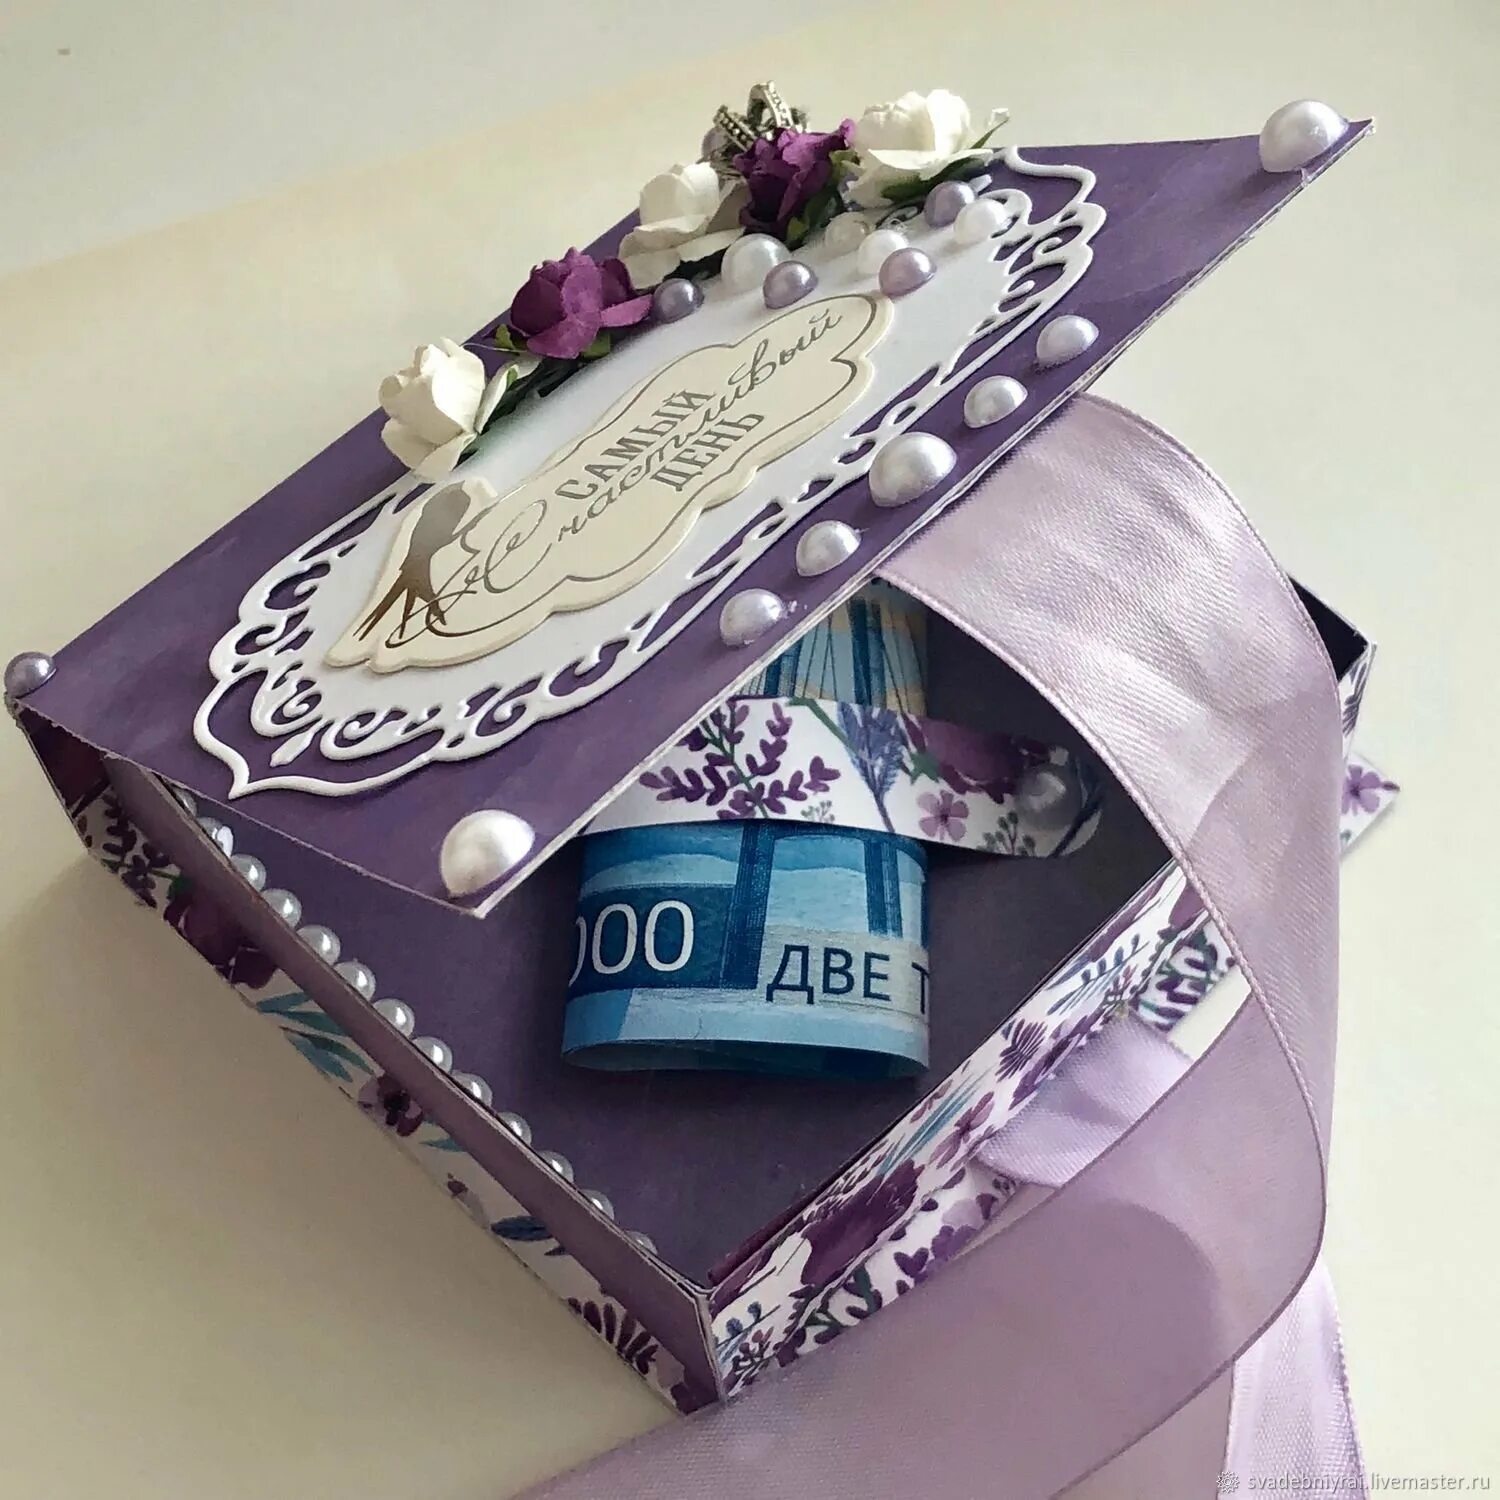 Подарок на свадьбу. Необычный подарок на свадьбу. Подарочная коробочка для денежного подарка на свадьбу. Оригинальный подарок деньгами.